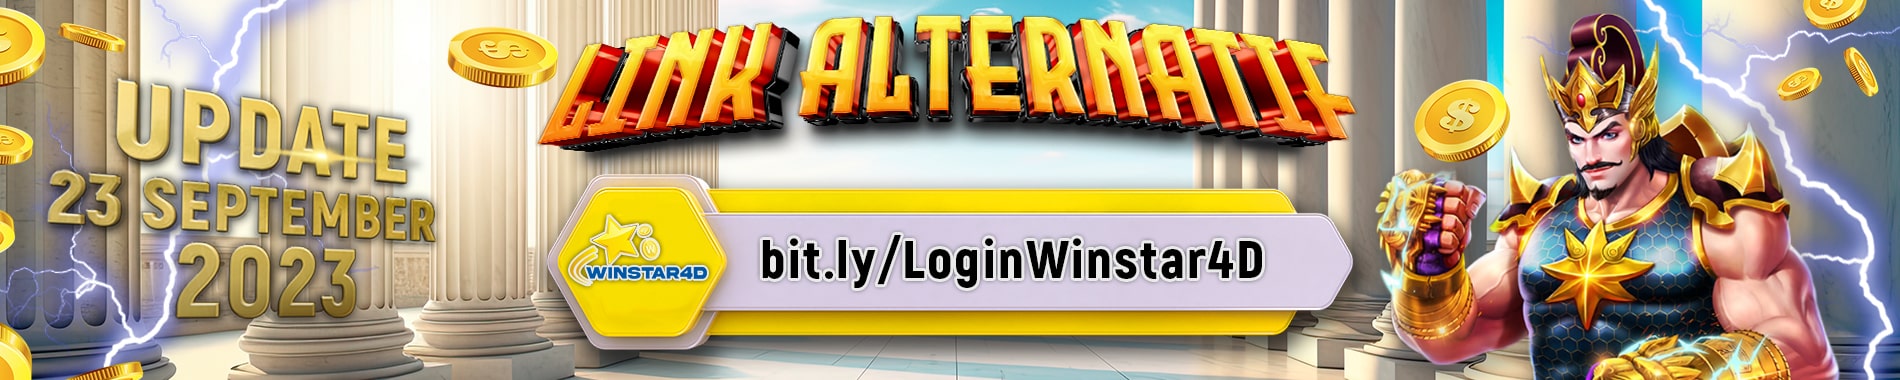 link alternatif winstar4d